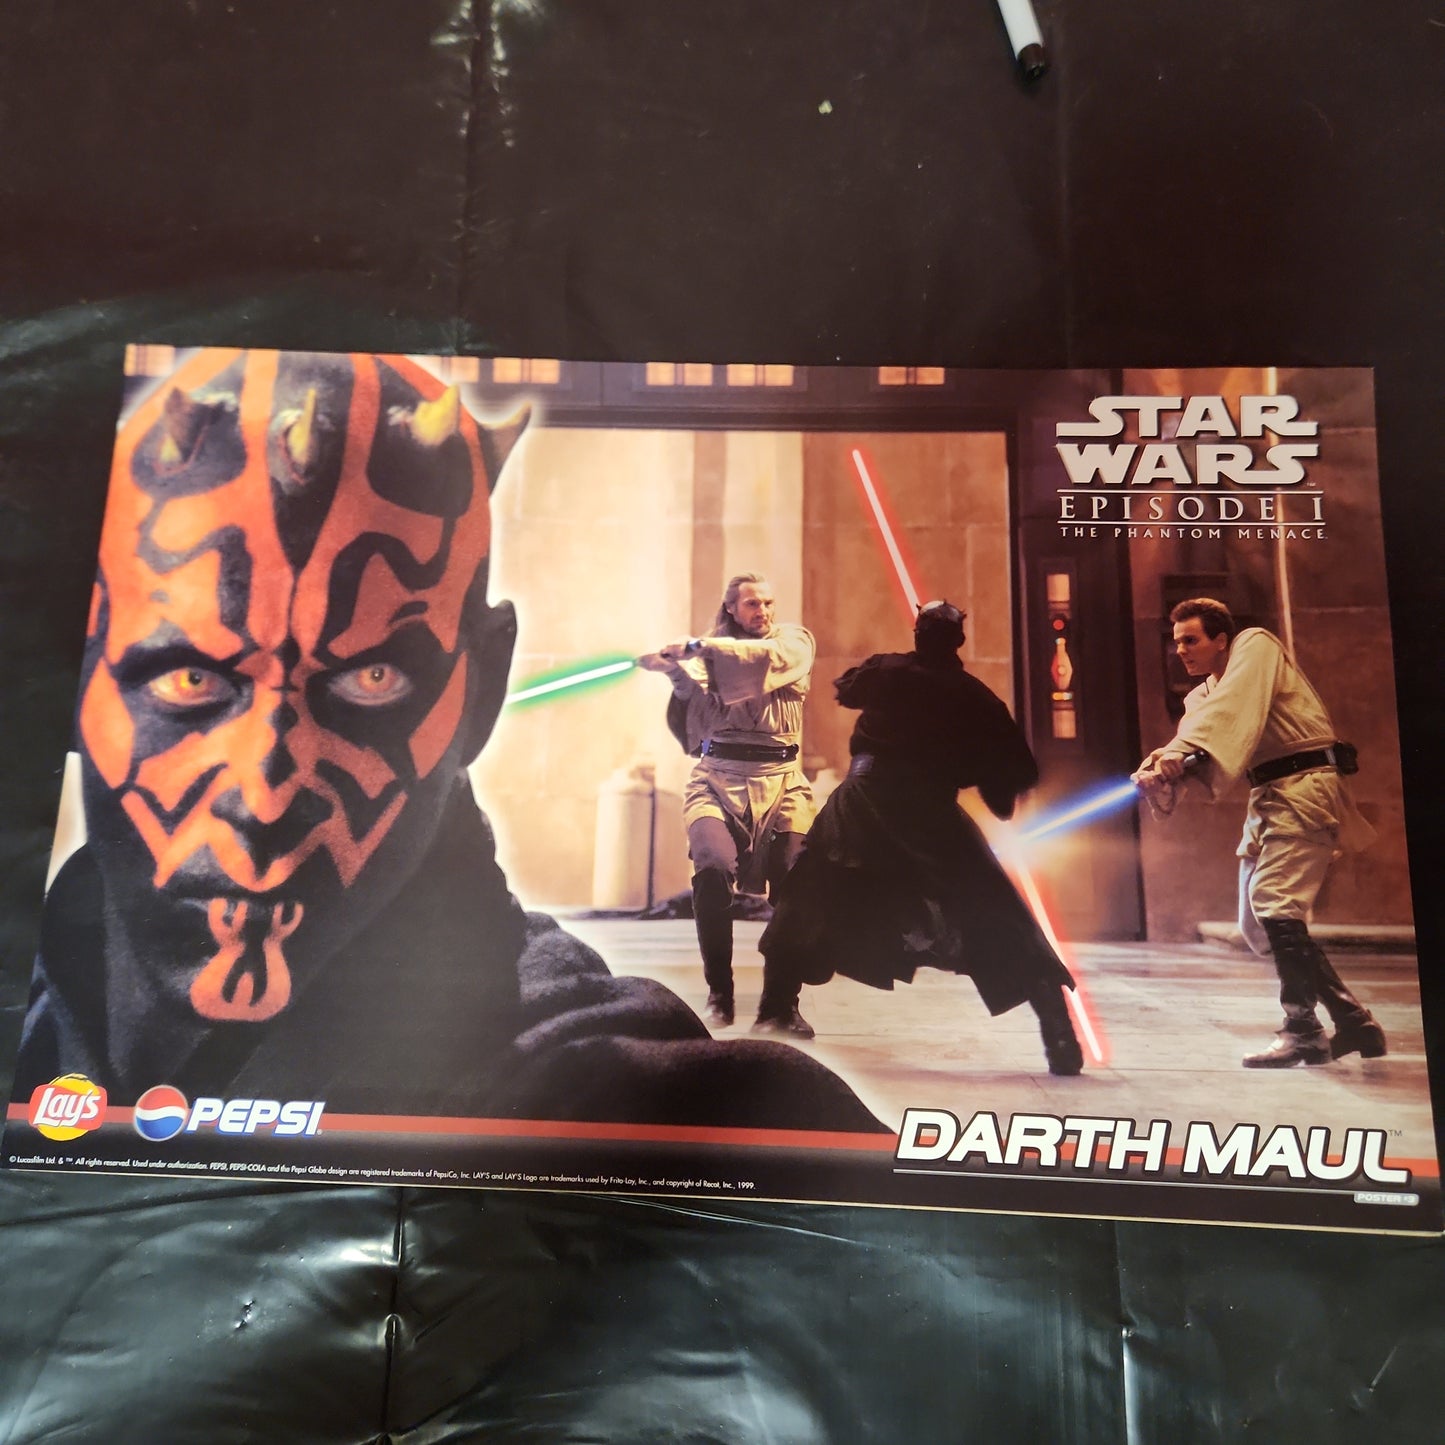 Paquete de 3 carteles promocionales originales de Star Wars Ep 1 de 1999 de ANAKIN SKYWALKER, DARTH MAUL y QUEEN AMIDALA 17 x 11 de LAY'S PEPSI